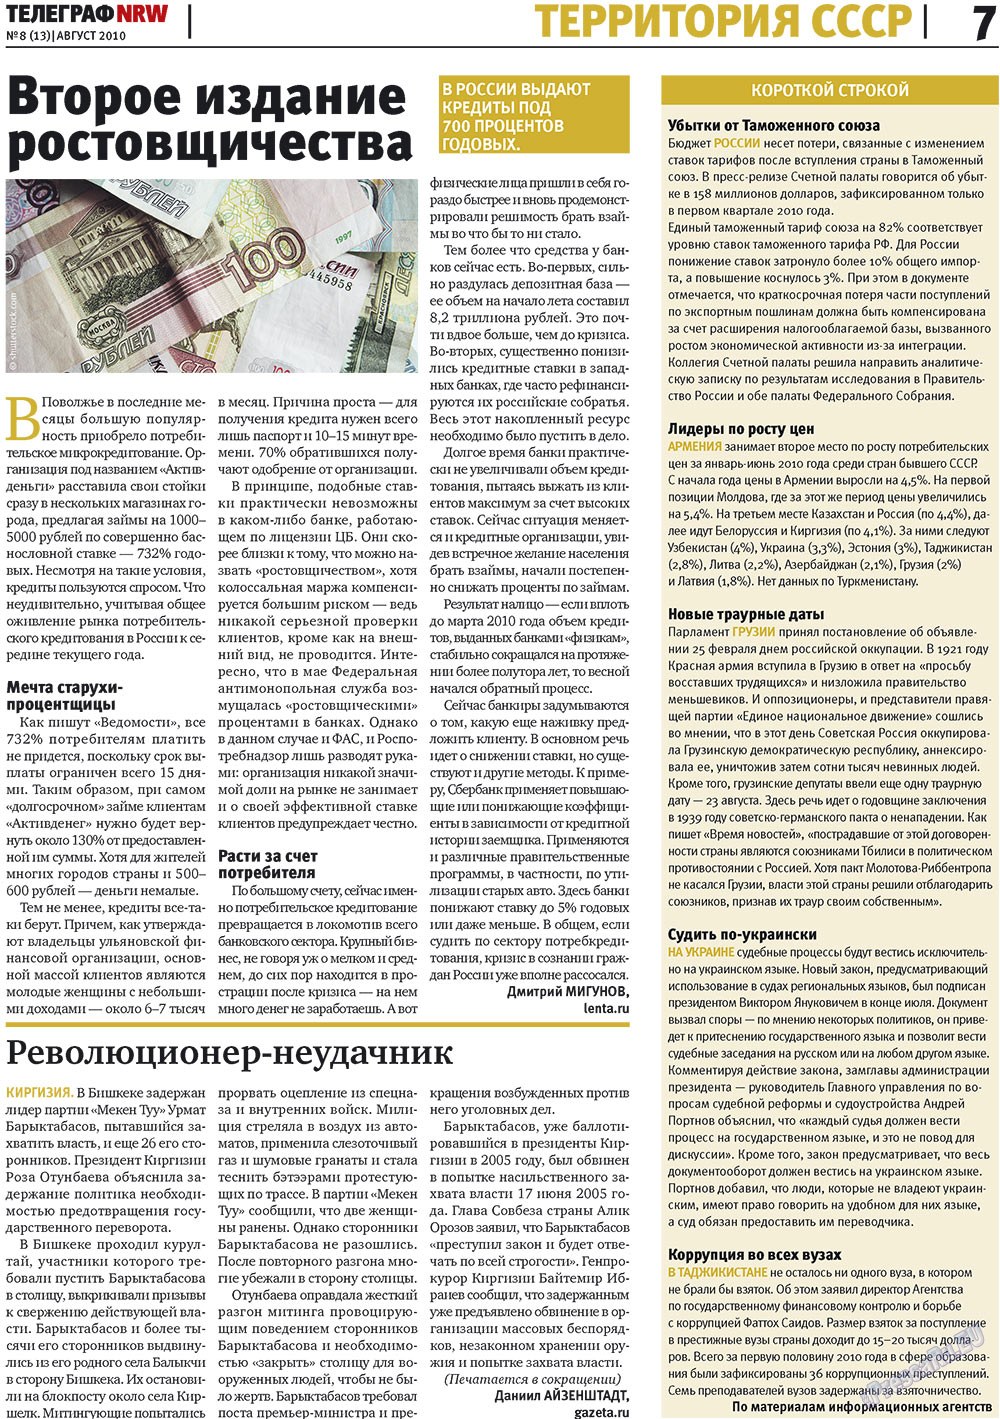 Телеграф NRW (газета). 2010 год, номер 8, стр. 7